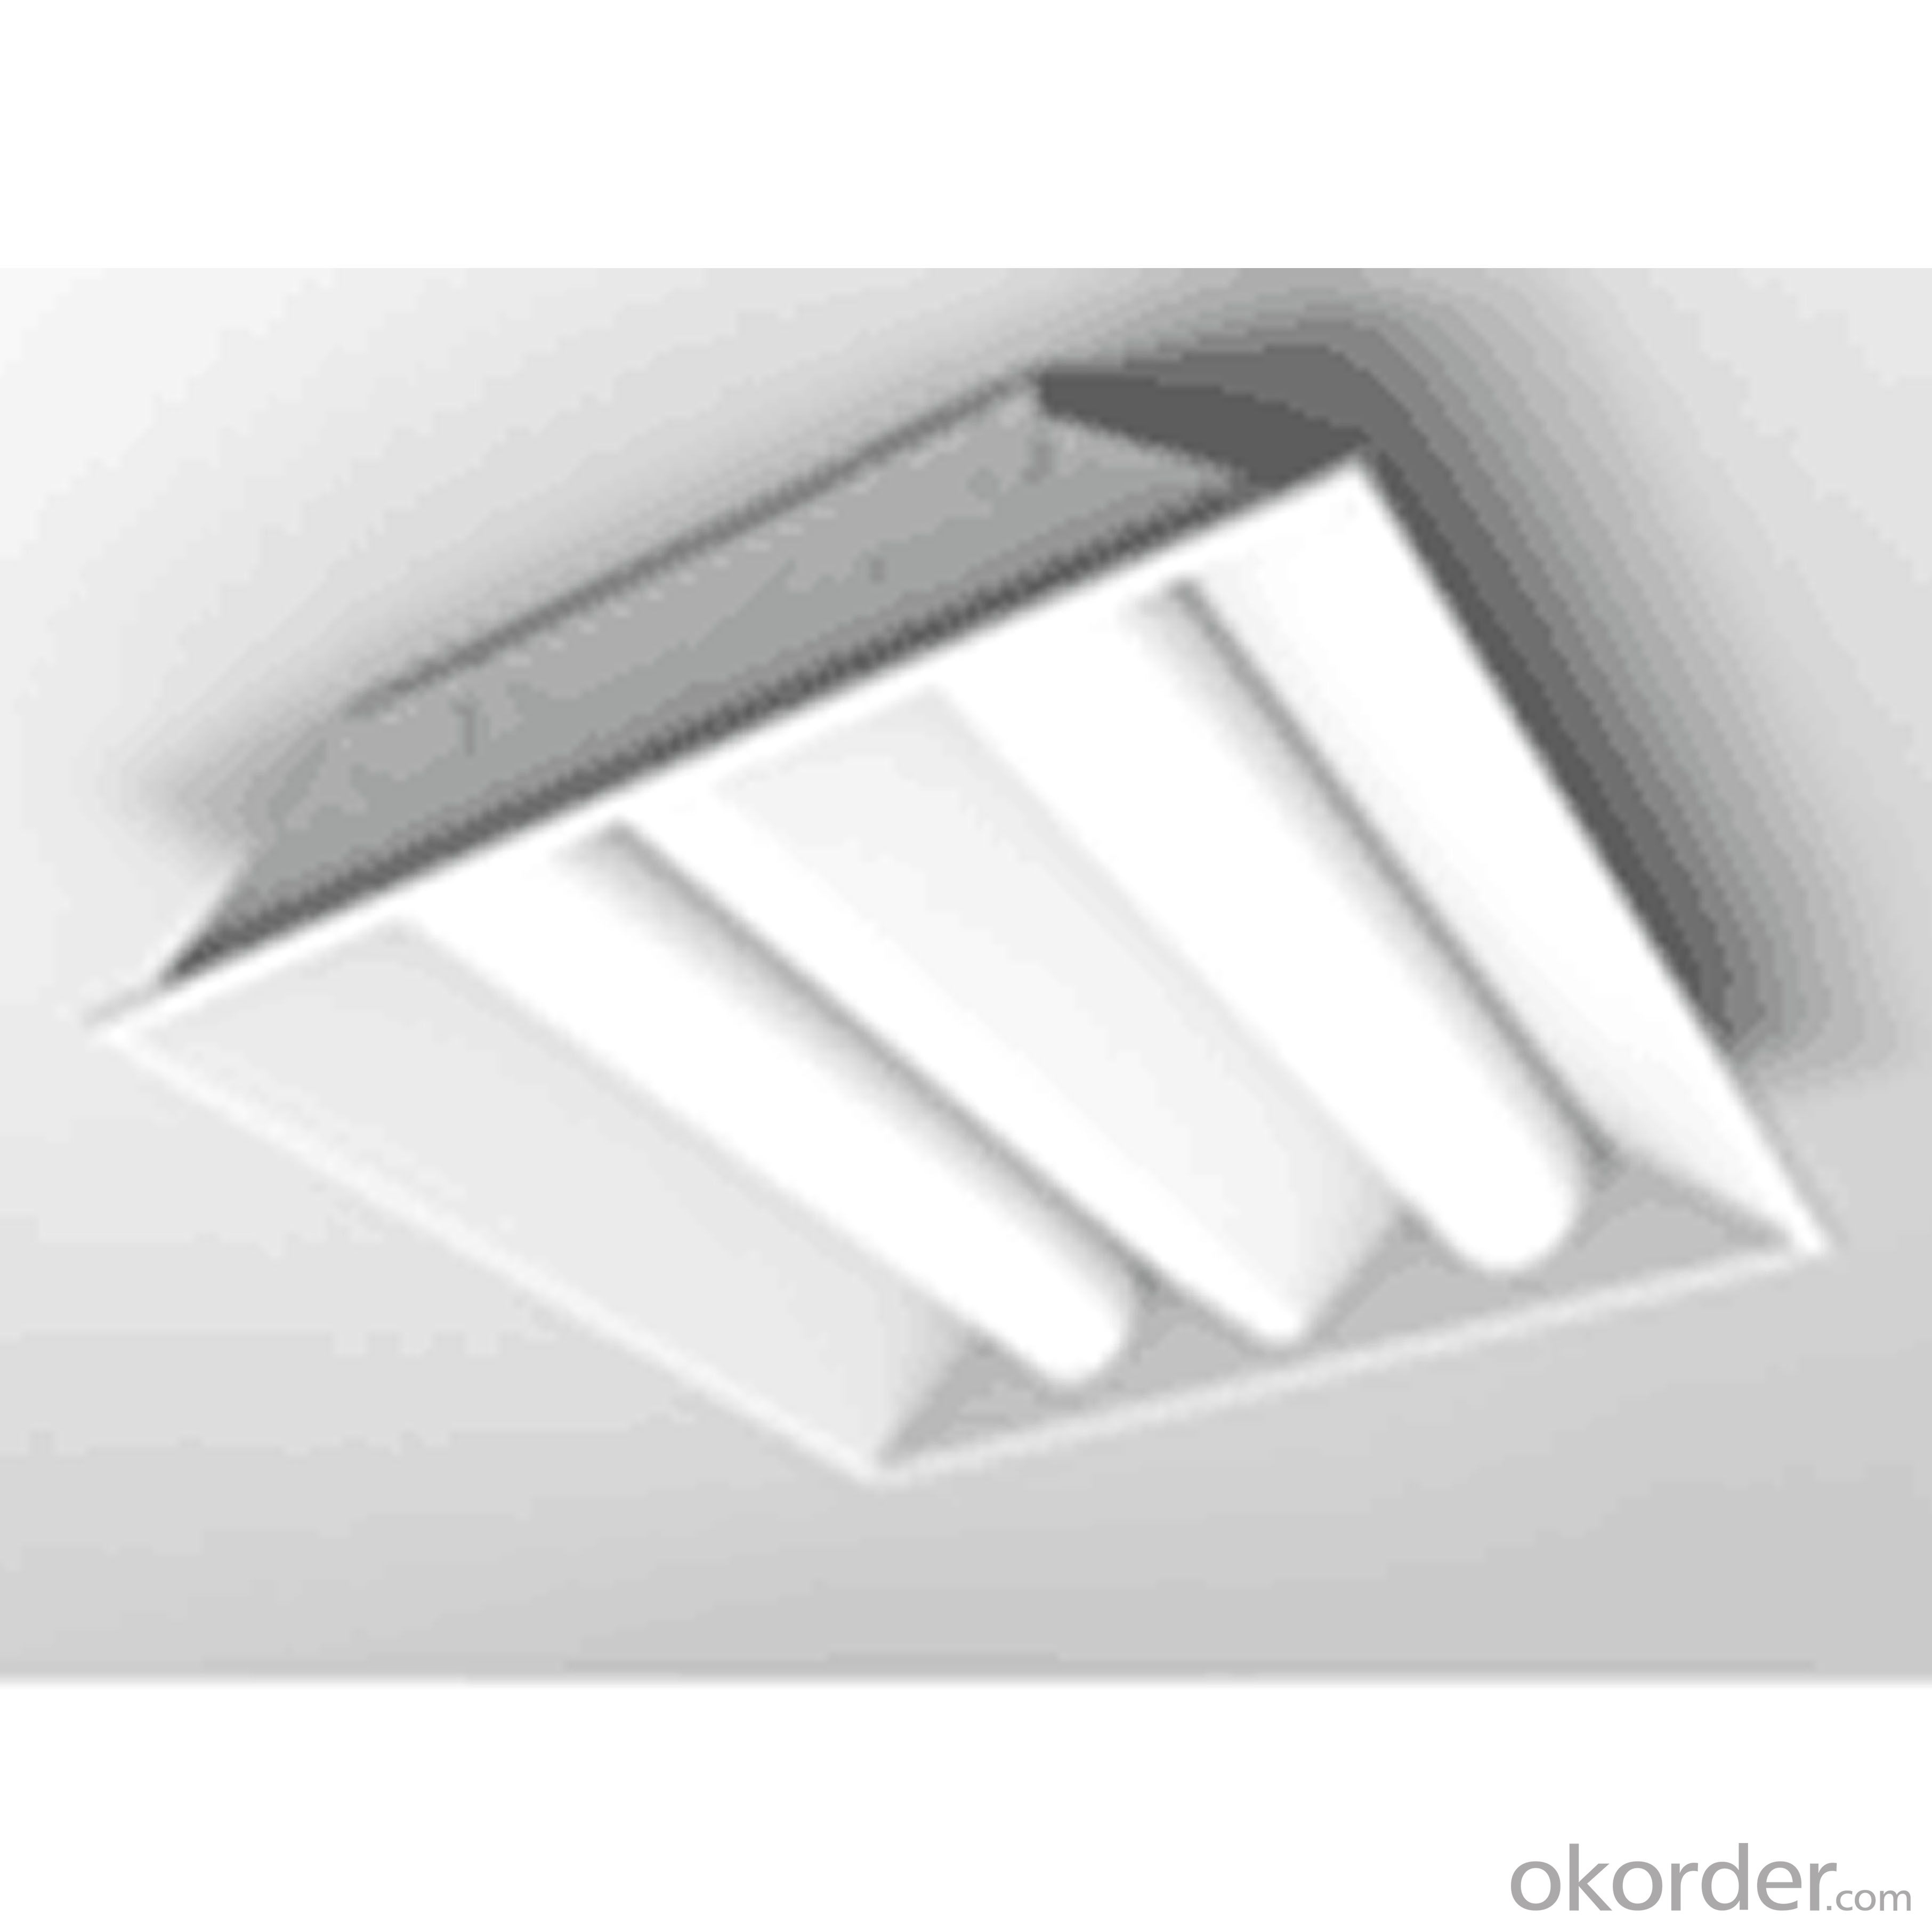 LED troffer light LED office lighting LED light LED square lighting 200mm*200mm LED troffer lighting